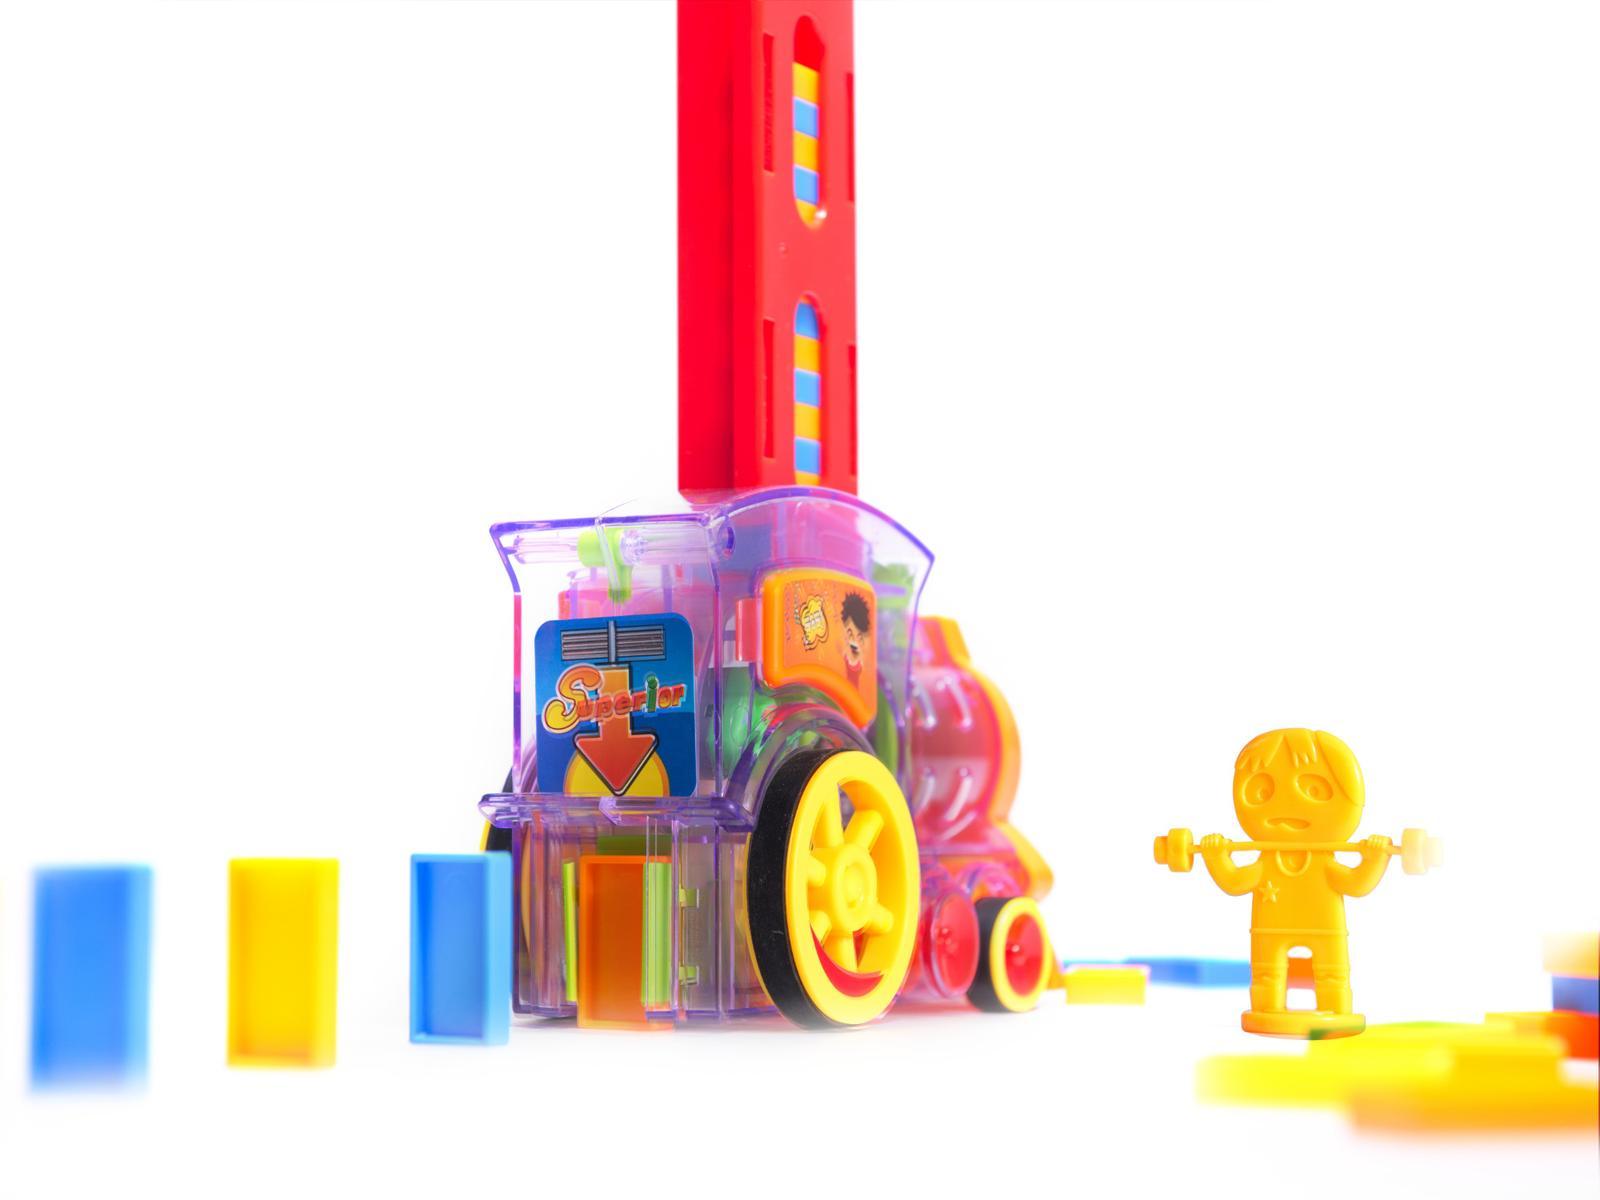 Pociąg Lokomotywa interaktywna układanka domino z kolejką zabawka dla dzieci 16x7x10 cm nr. 5